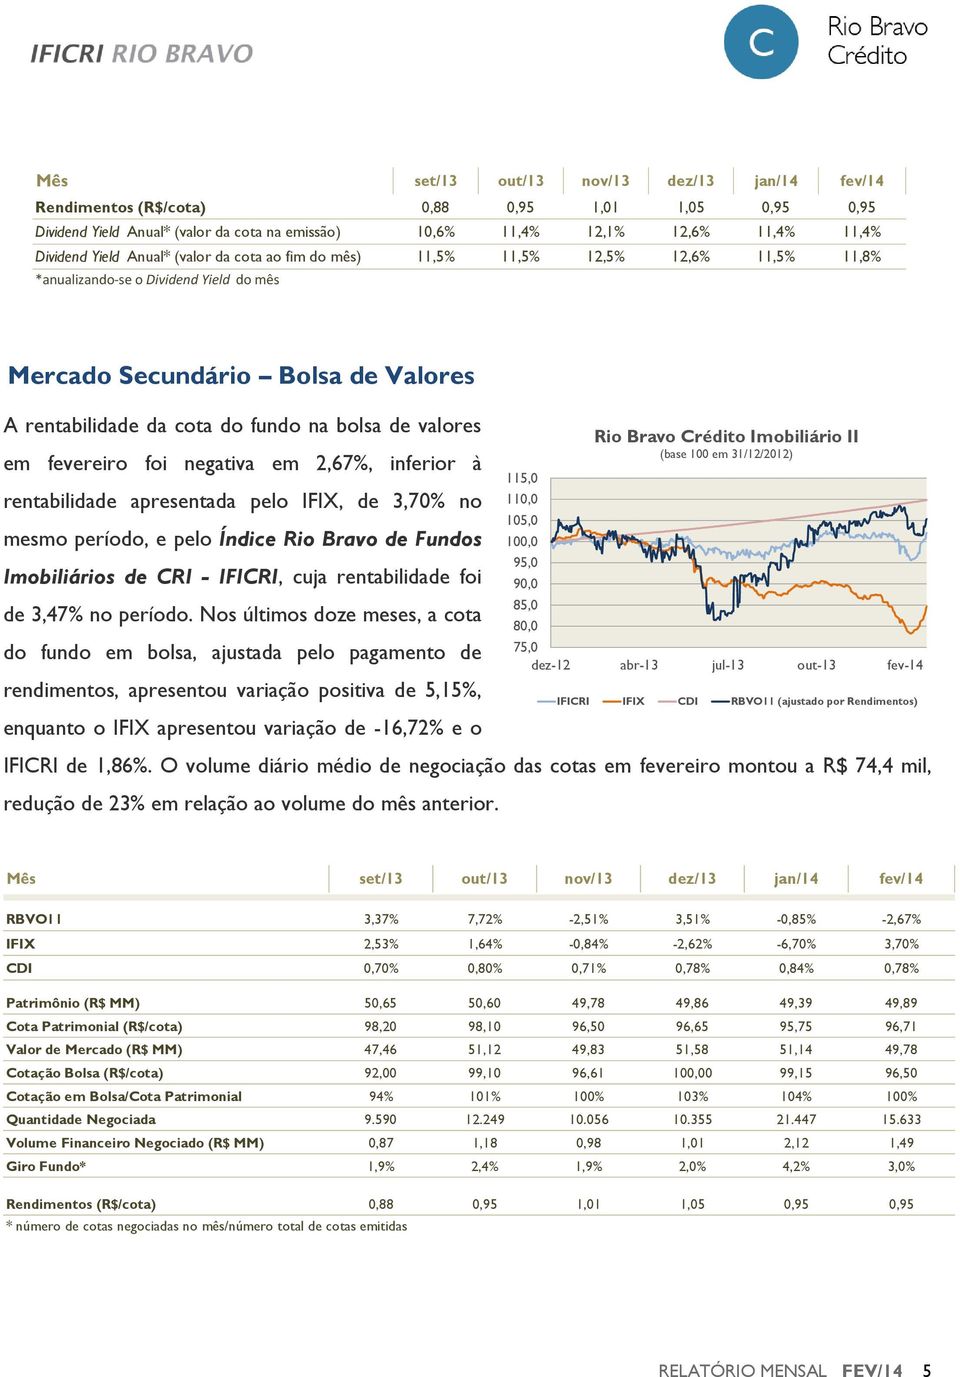 em fevereiro foi negativa em 2,67%, inferior à rentabilidade apresentada pelo IFIX, de 3,70% no mesmo período, e pelo Índice Rio Bravo de Fundos Imobiliários de CRI - IFICRI, cuja rentabilidade foi